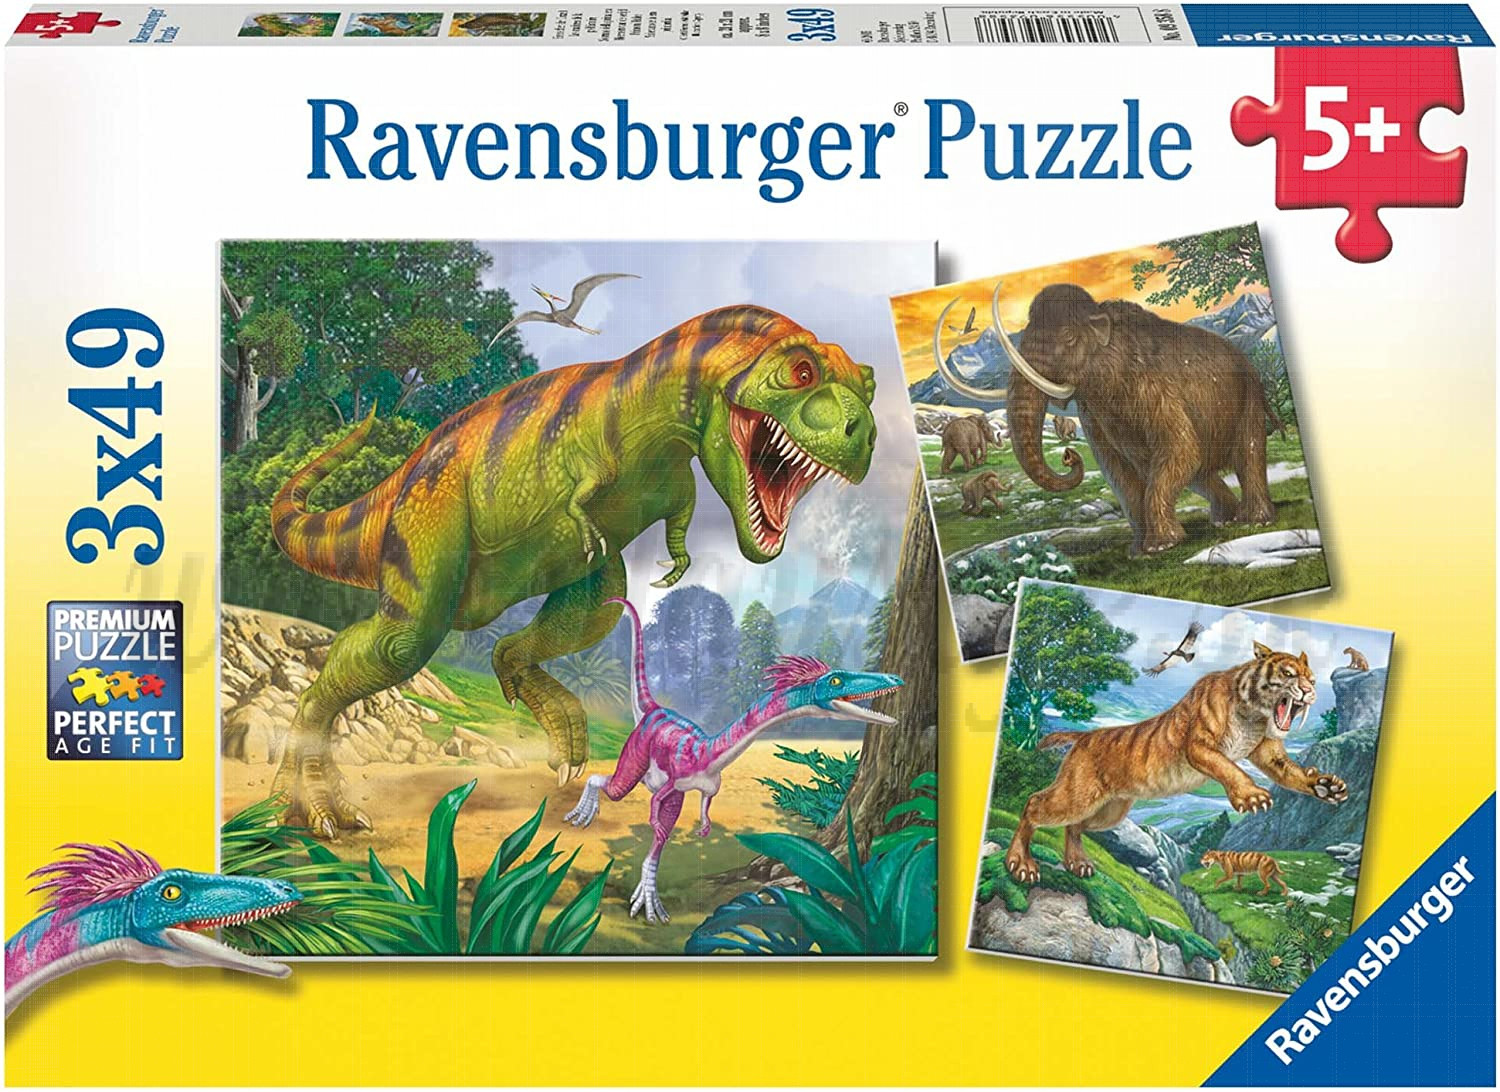 Ravensburger Puzzle Dinosaurs, 3x49pieces